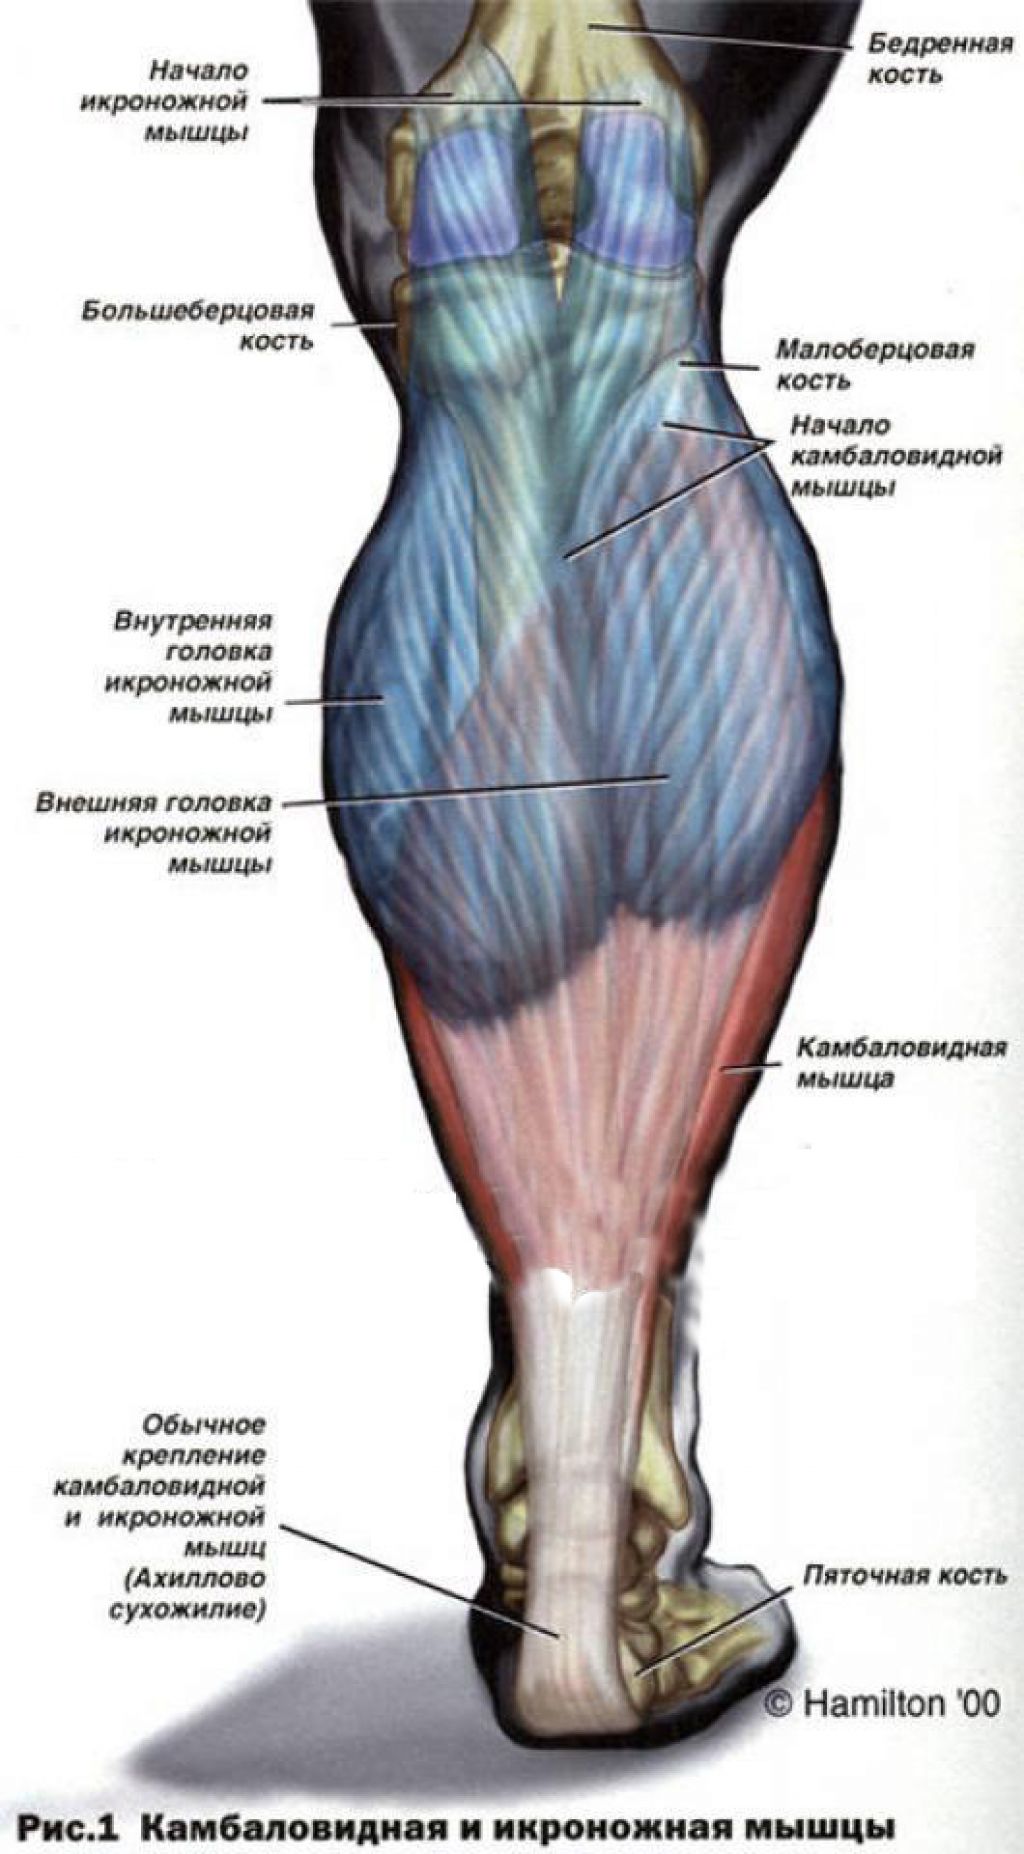 Затылок ноги. Икроножная мышца голени. Икроножная и камбаловидная мышцы. Сухожилия икроножной мышцы анатомия. Строение камбаловидной мышцы.